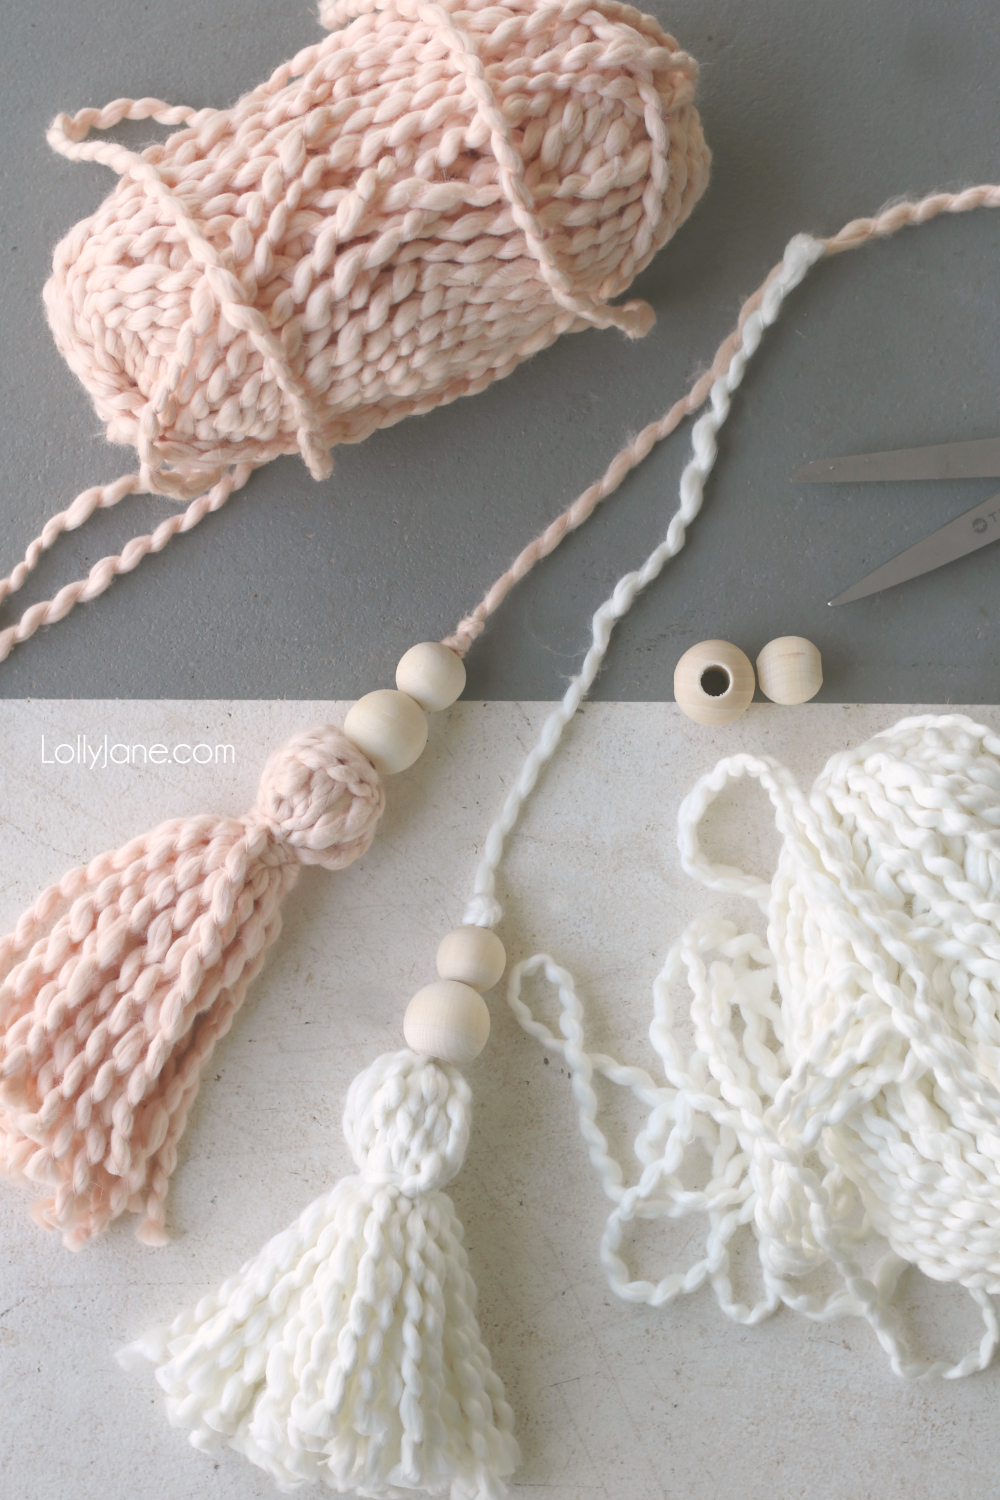 Yarn tassels how to make